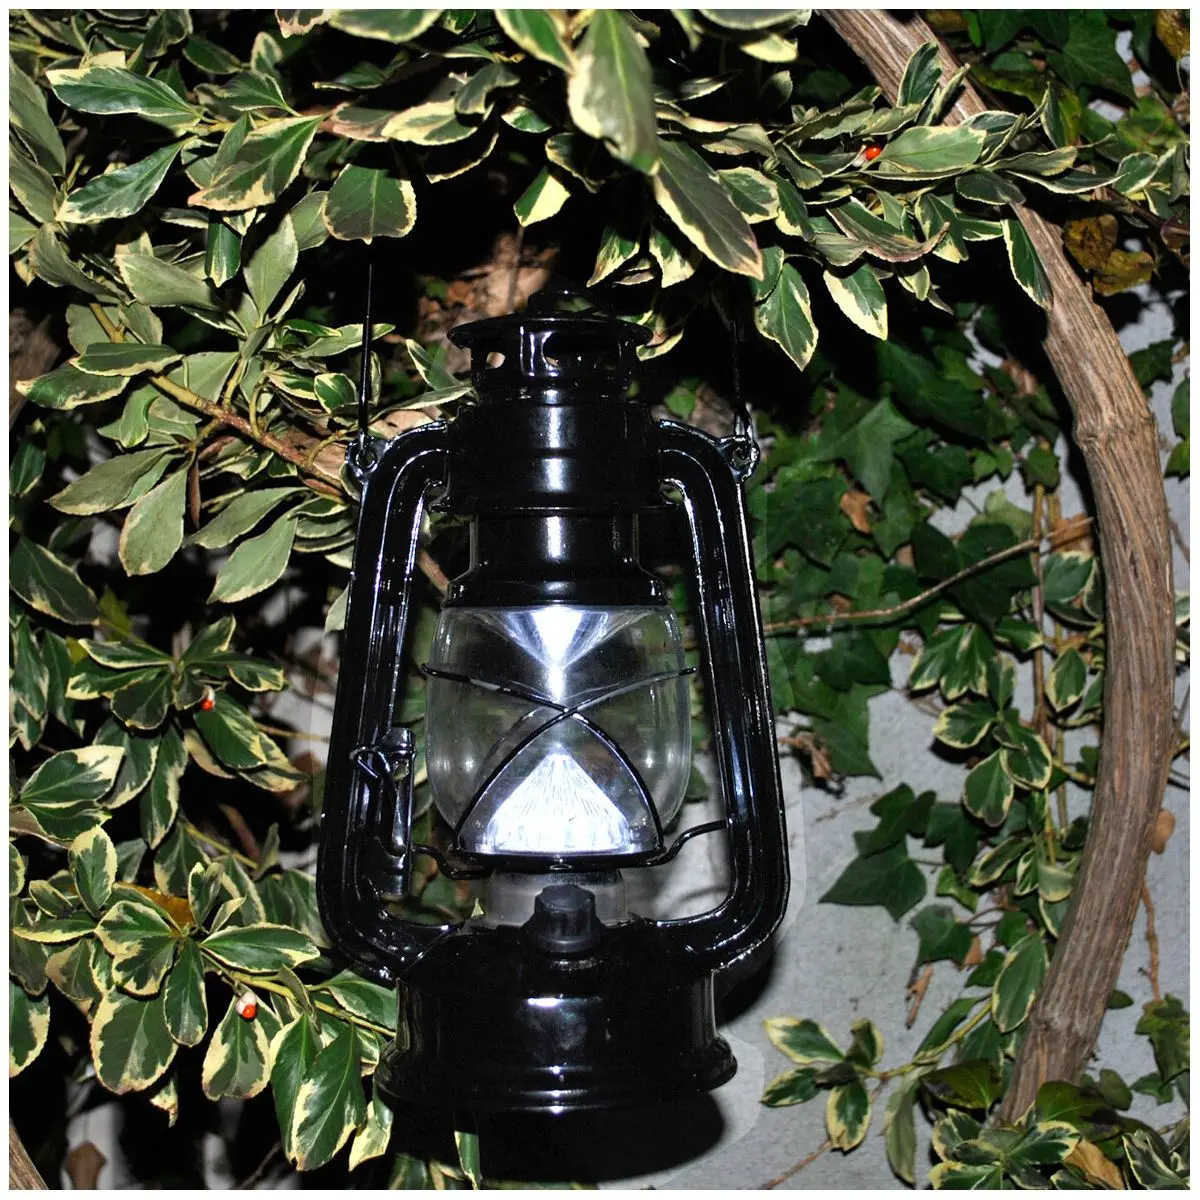 Lanternă lampă de camping - funcție de reglare lină